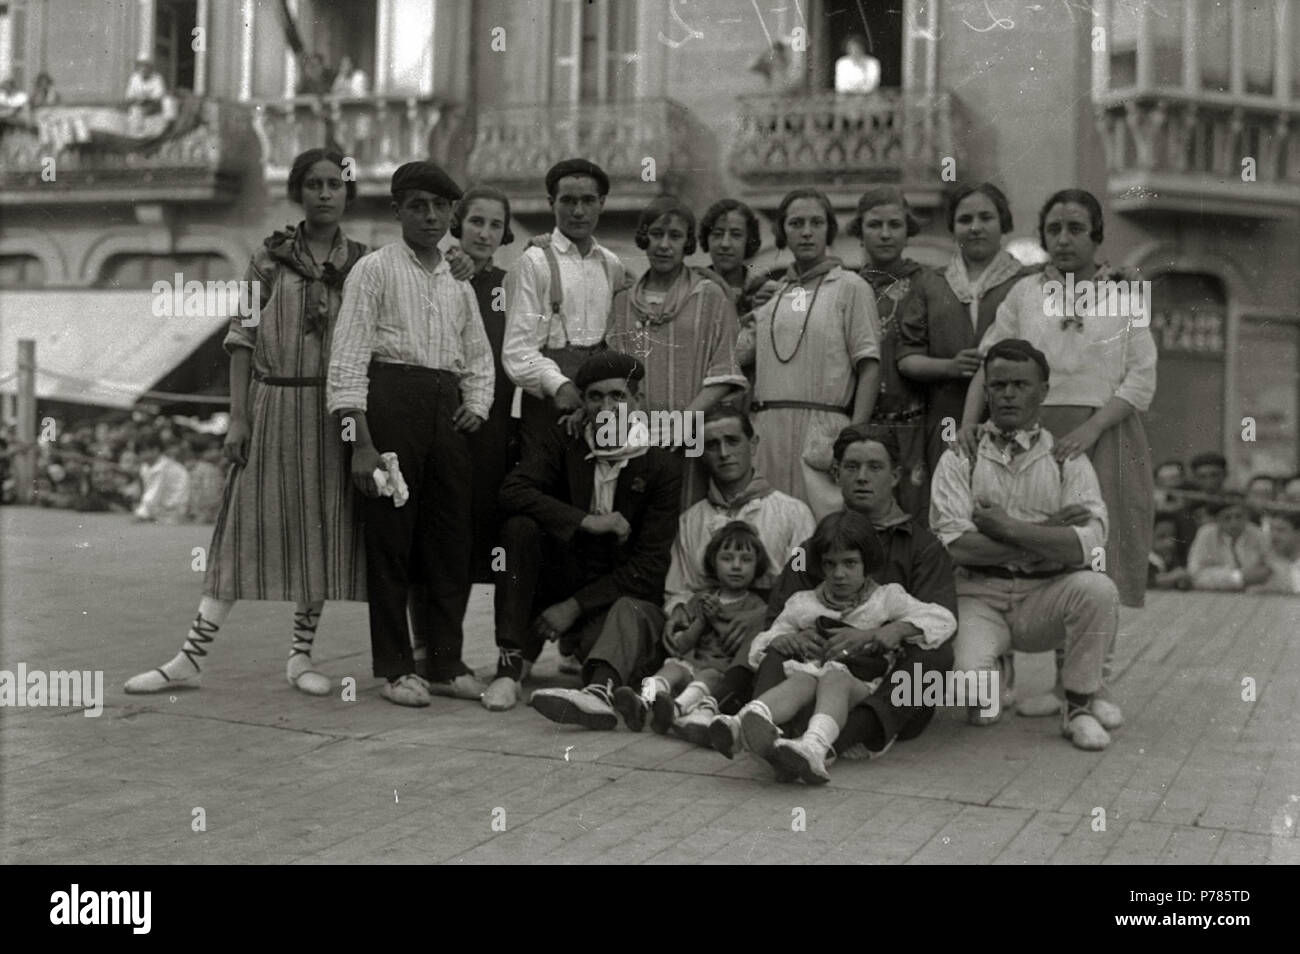 Español: Título original: Concurso de baile al suelto en la plaza de Easo (1/3) Localización: San Sebastián (Guipúzcoa)  . 1923 18 Concurso de baile al suelto en la plaza de Easo (1 de 3) - Fondo Car-Kutxa Fototeka Stock Photo